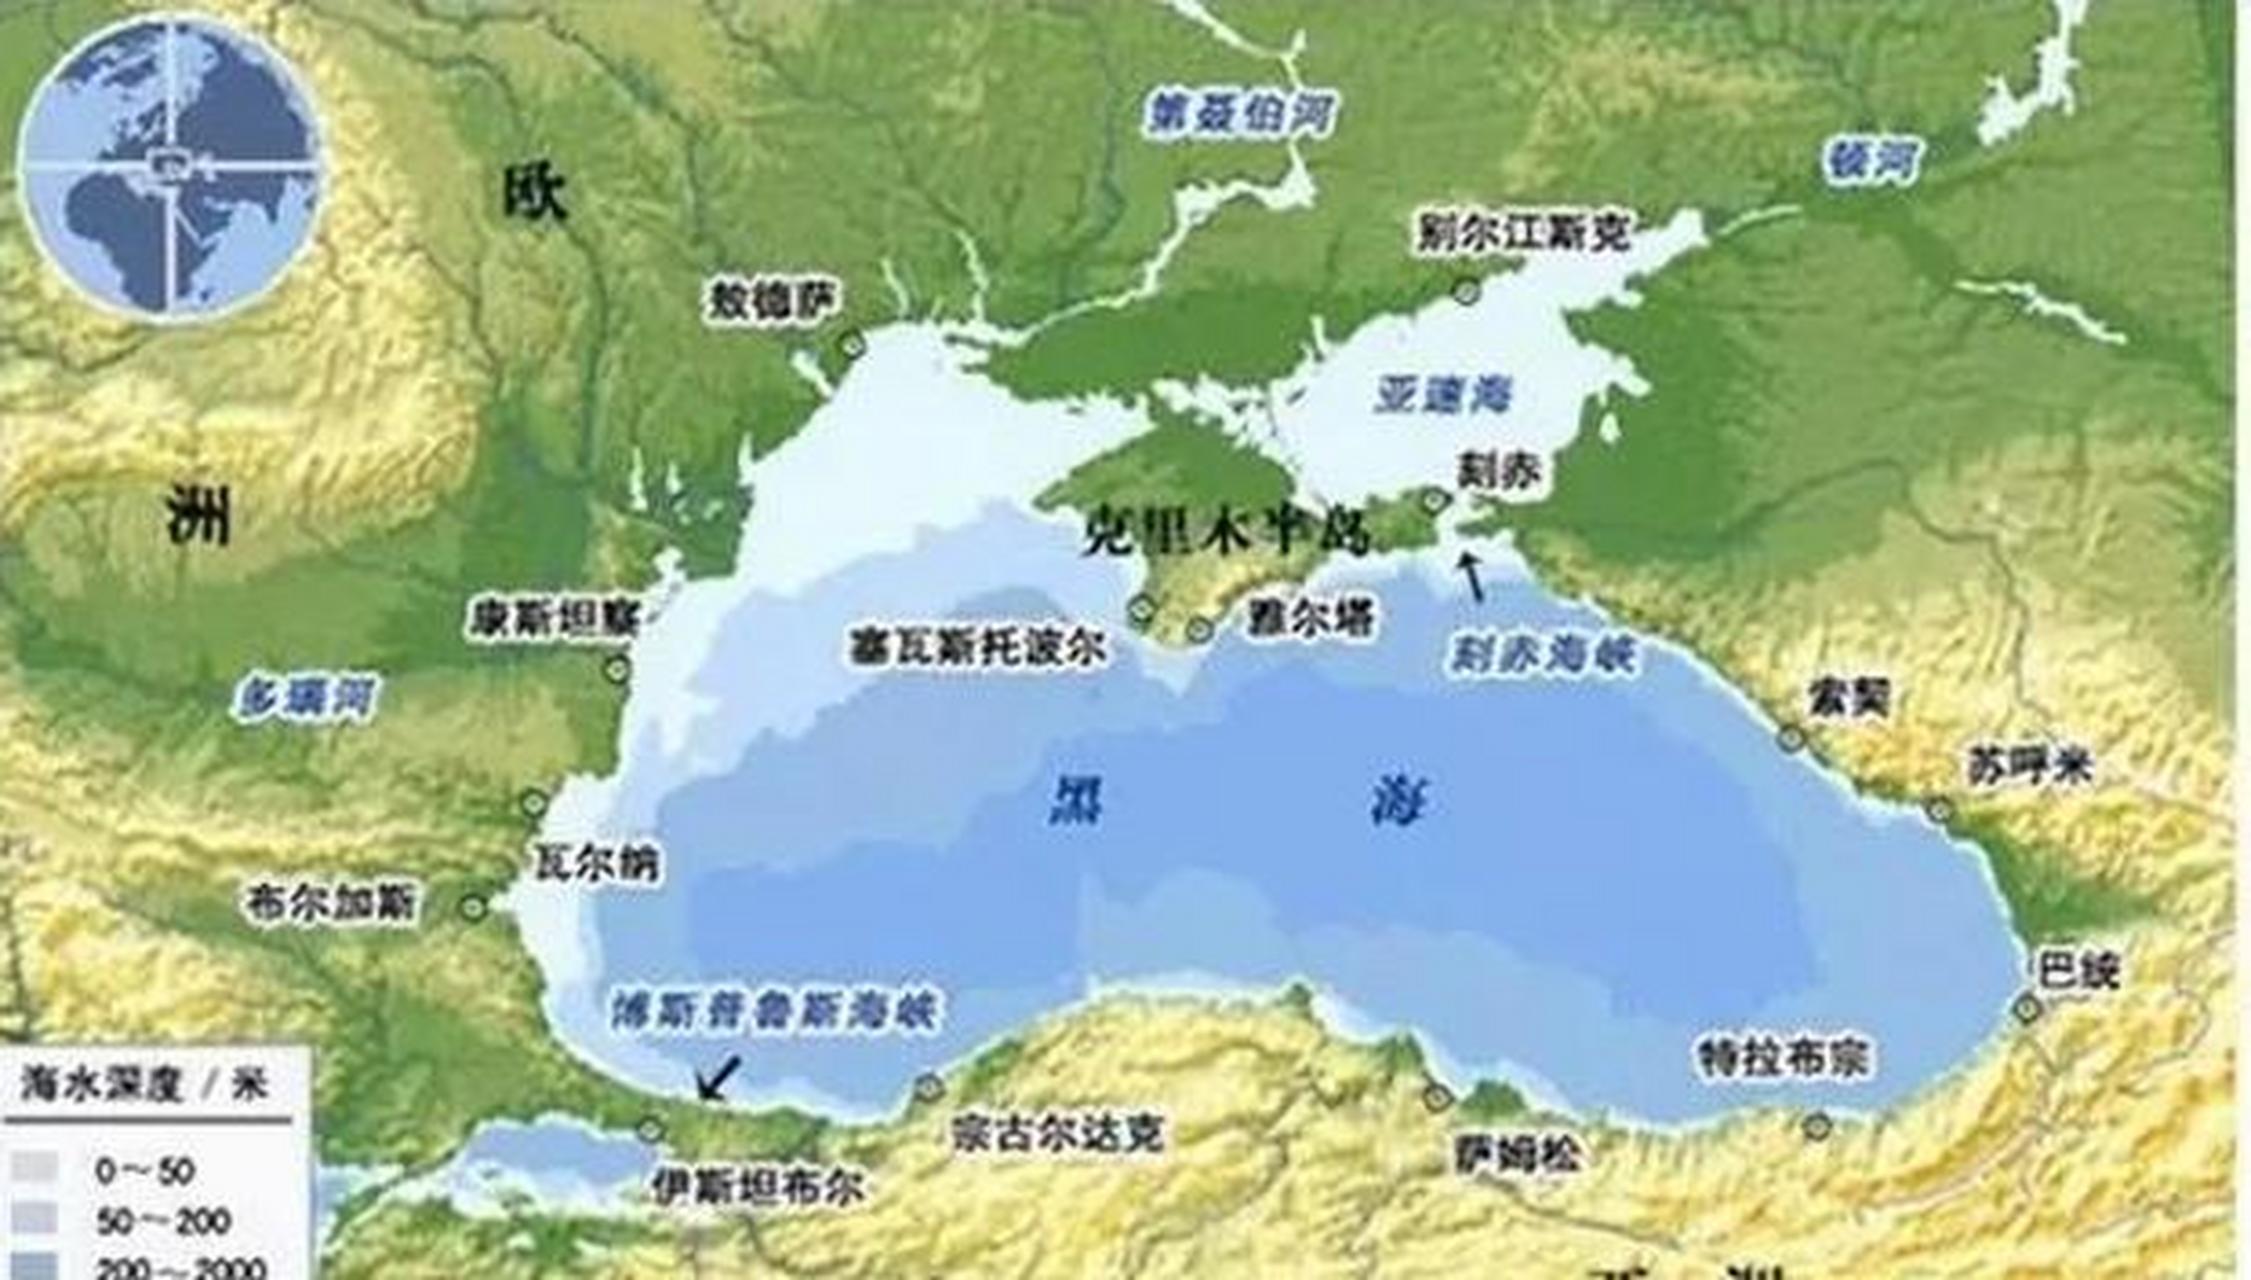 从地图上看,黑海更像是一个湖泊,它的出海口太狭窄,掌握在土耳其的手